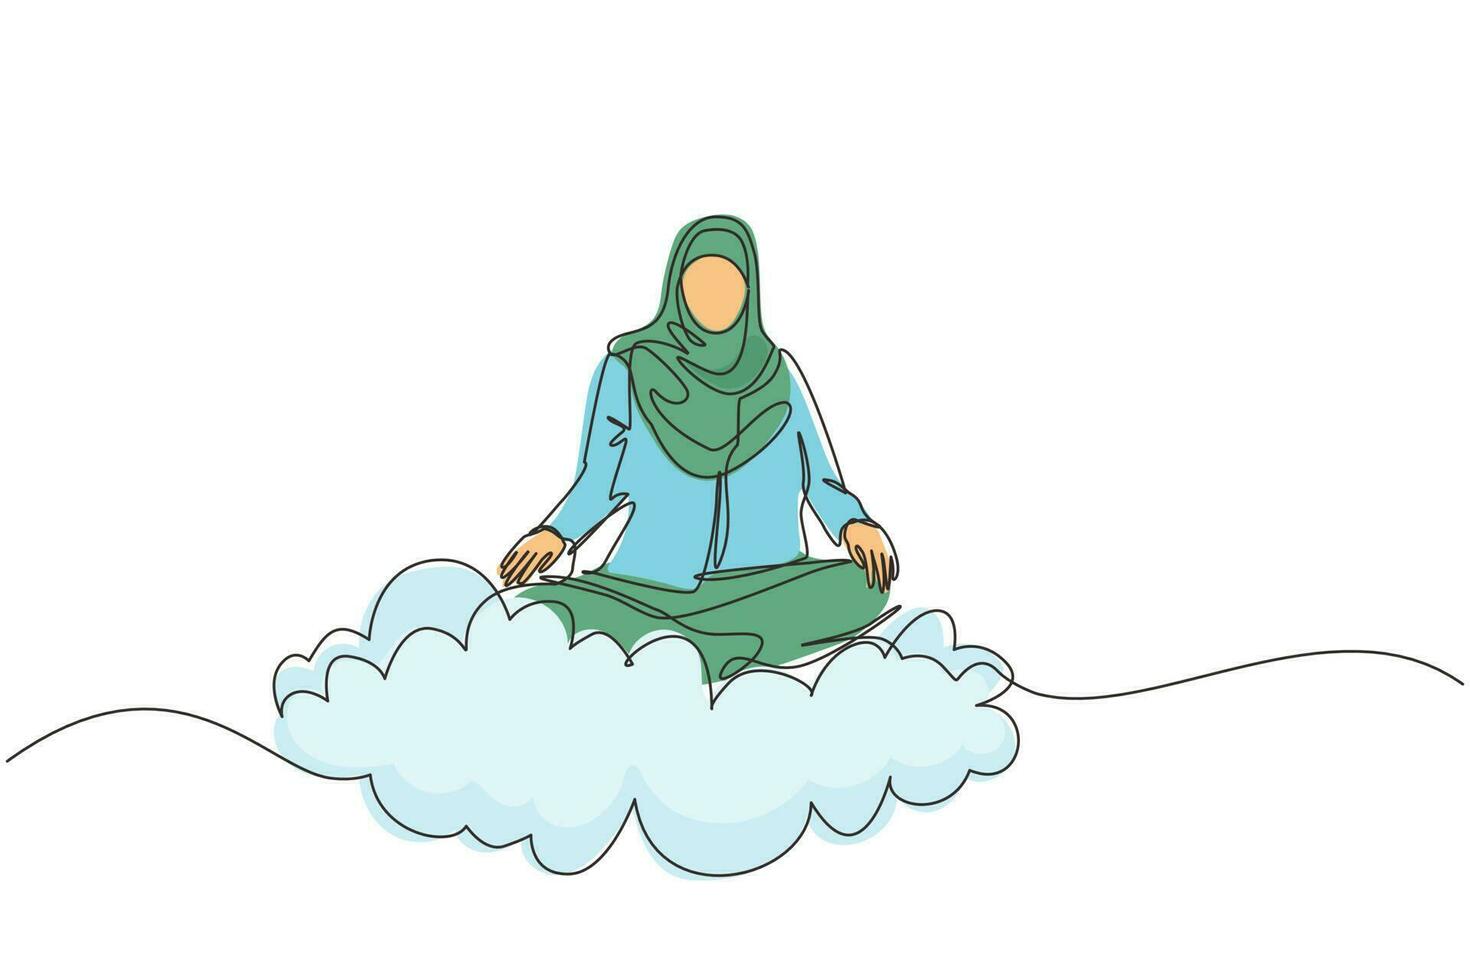 un trabajador de oficina de dibujo de una sola línea continua o una mujer de negocios se relaja, medita en posición de loto en las nubes. mujer árabe relajándose con pose de yoga o meditación. vector de diseño gráfico de dibujo de una línea